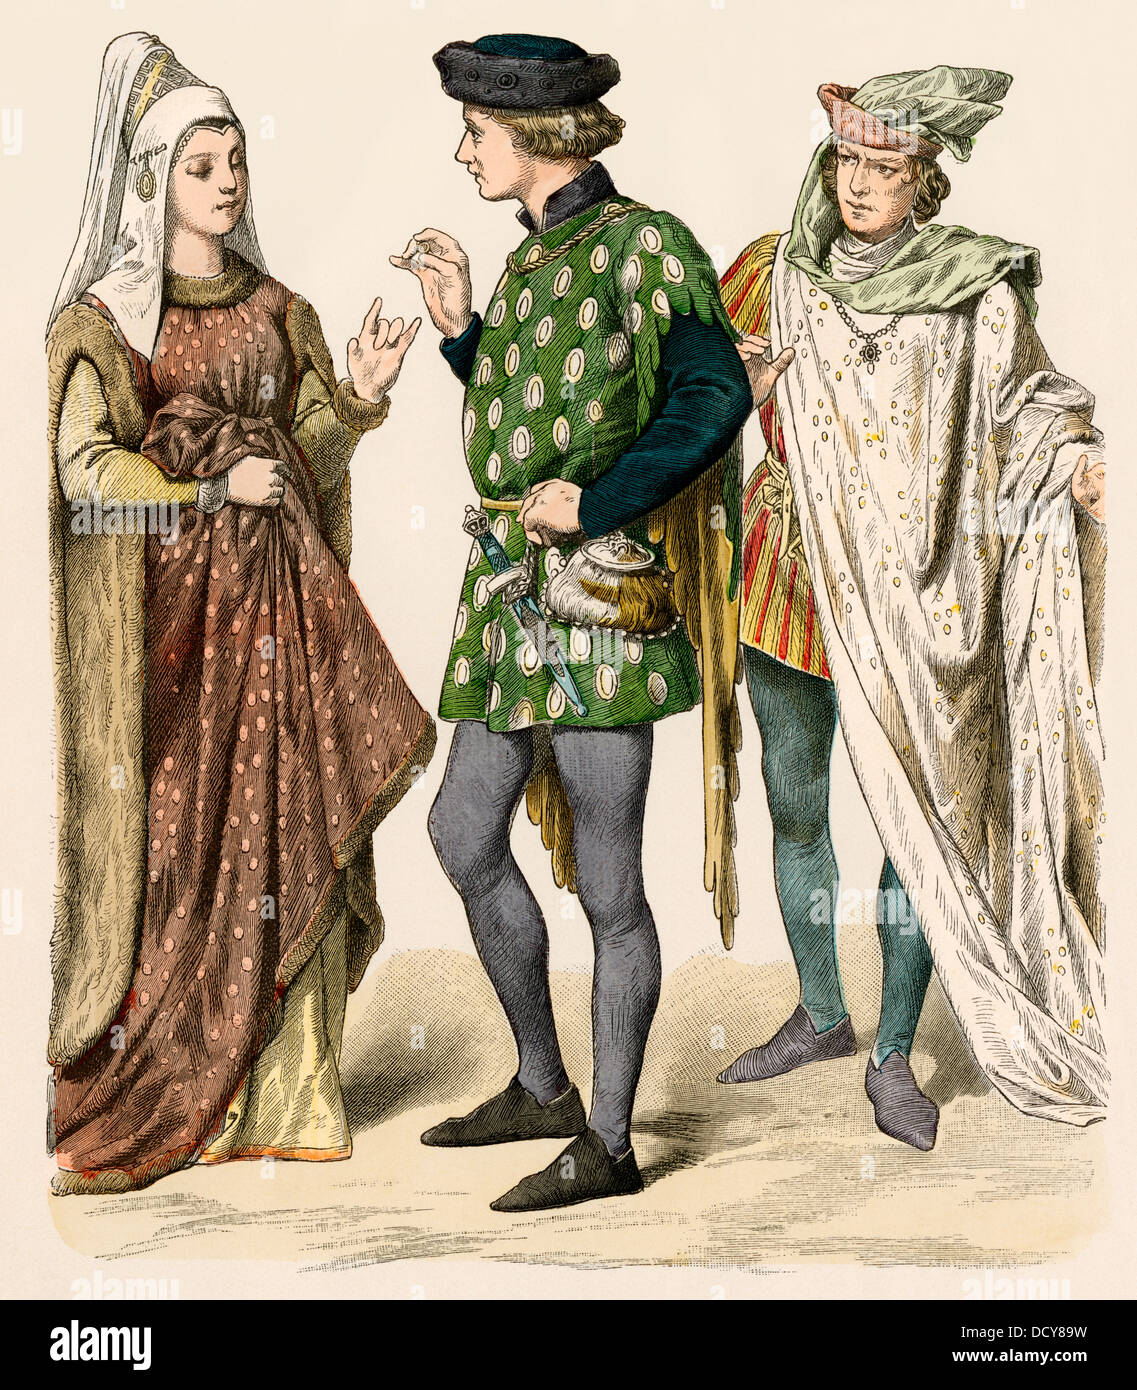 Los ciudadanos ingleses de principios de los 1400s. Mano de color imprimir Foto de stock